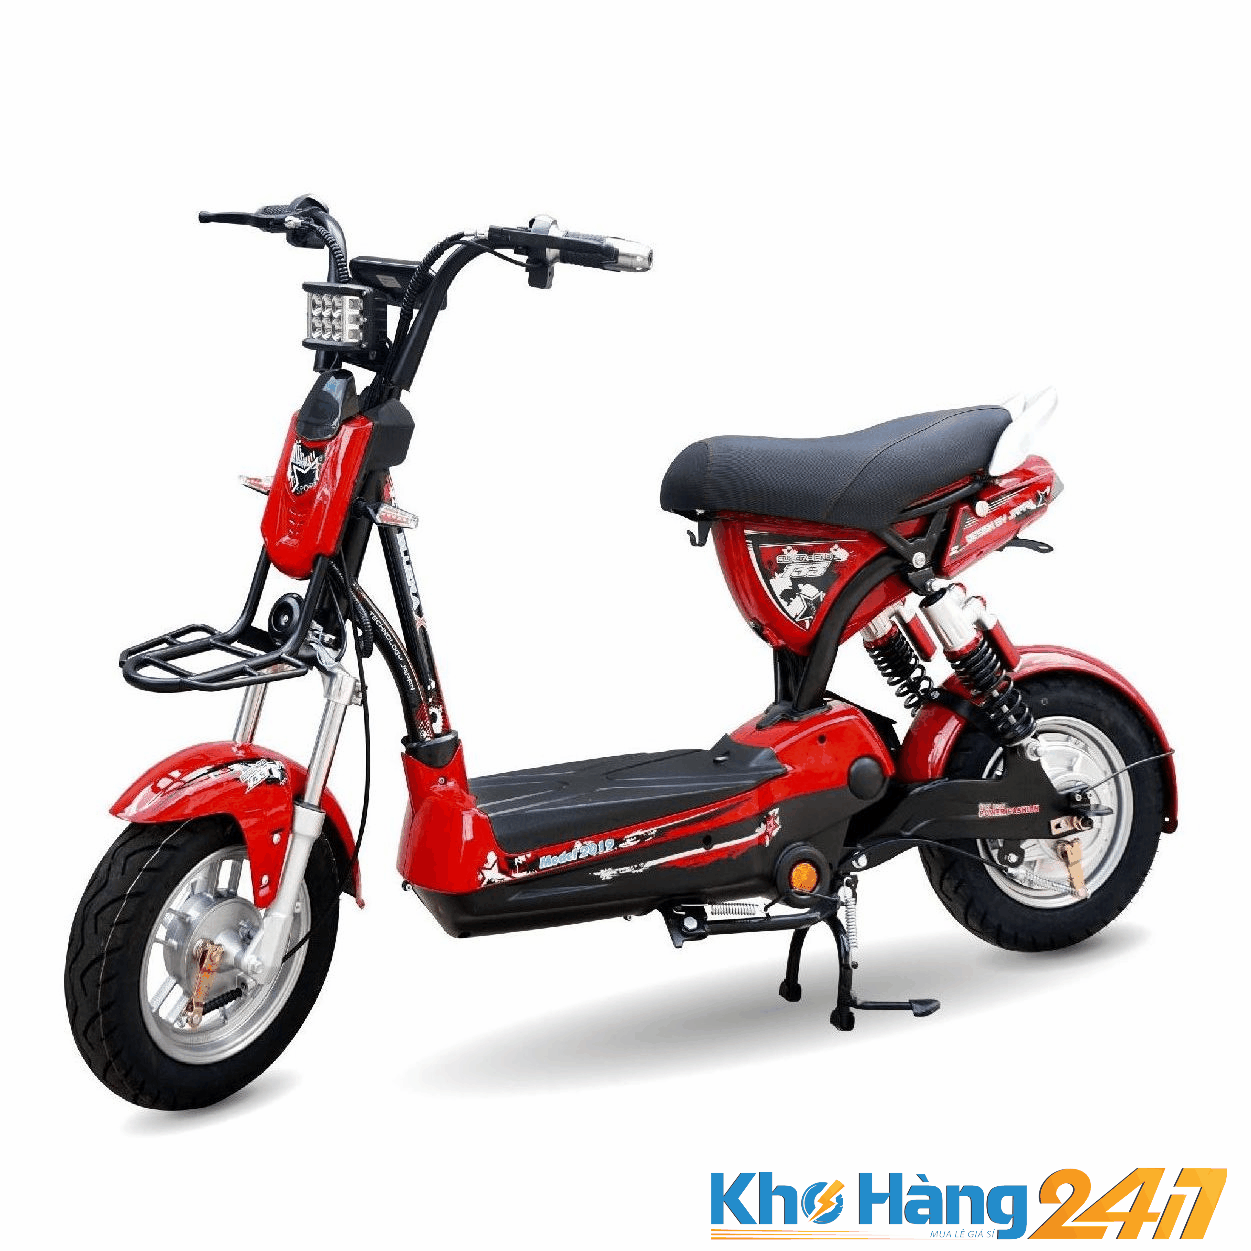 XE DAP DIEN 133 X PRO 3 01 - Tổng hợp những mẫu xe đạp điện giá rẻ dưới 10 triệu bạn nên mua tại khohang247